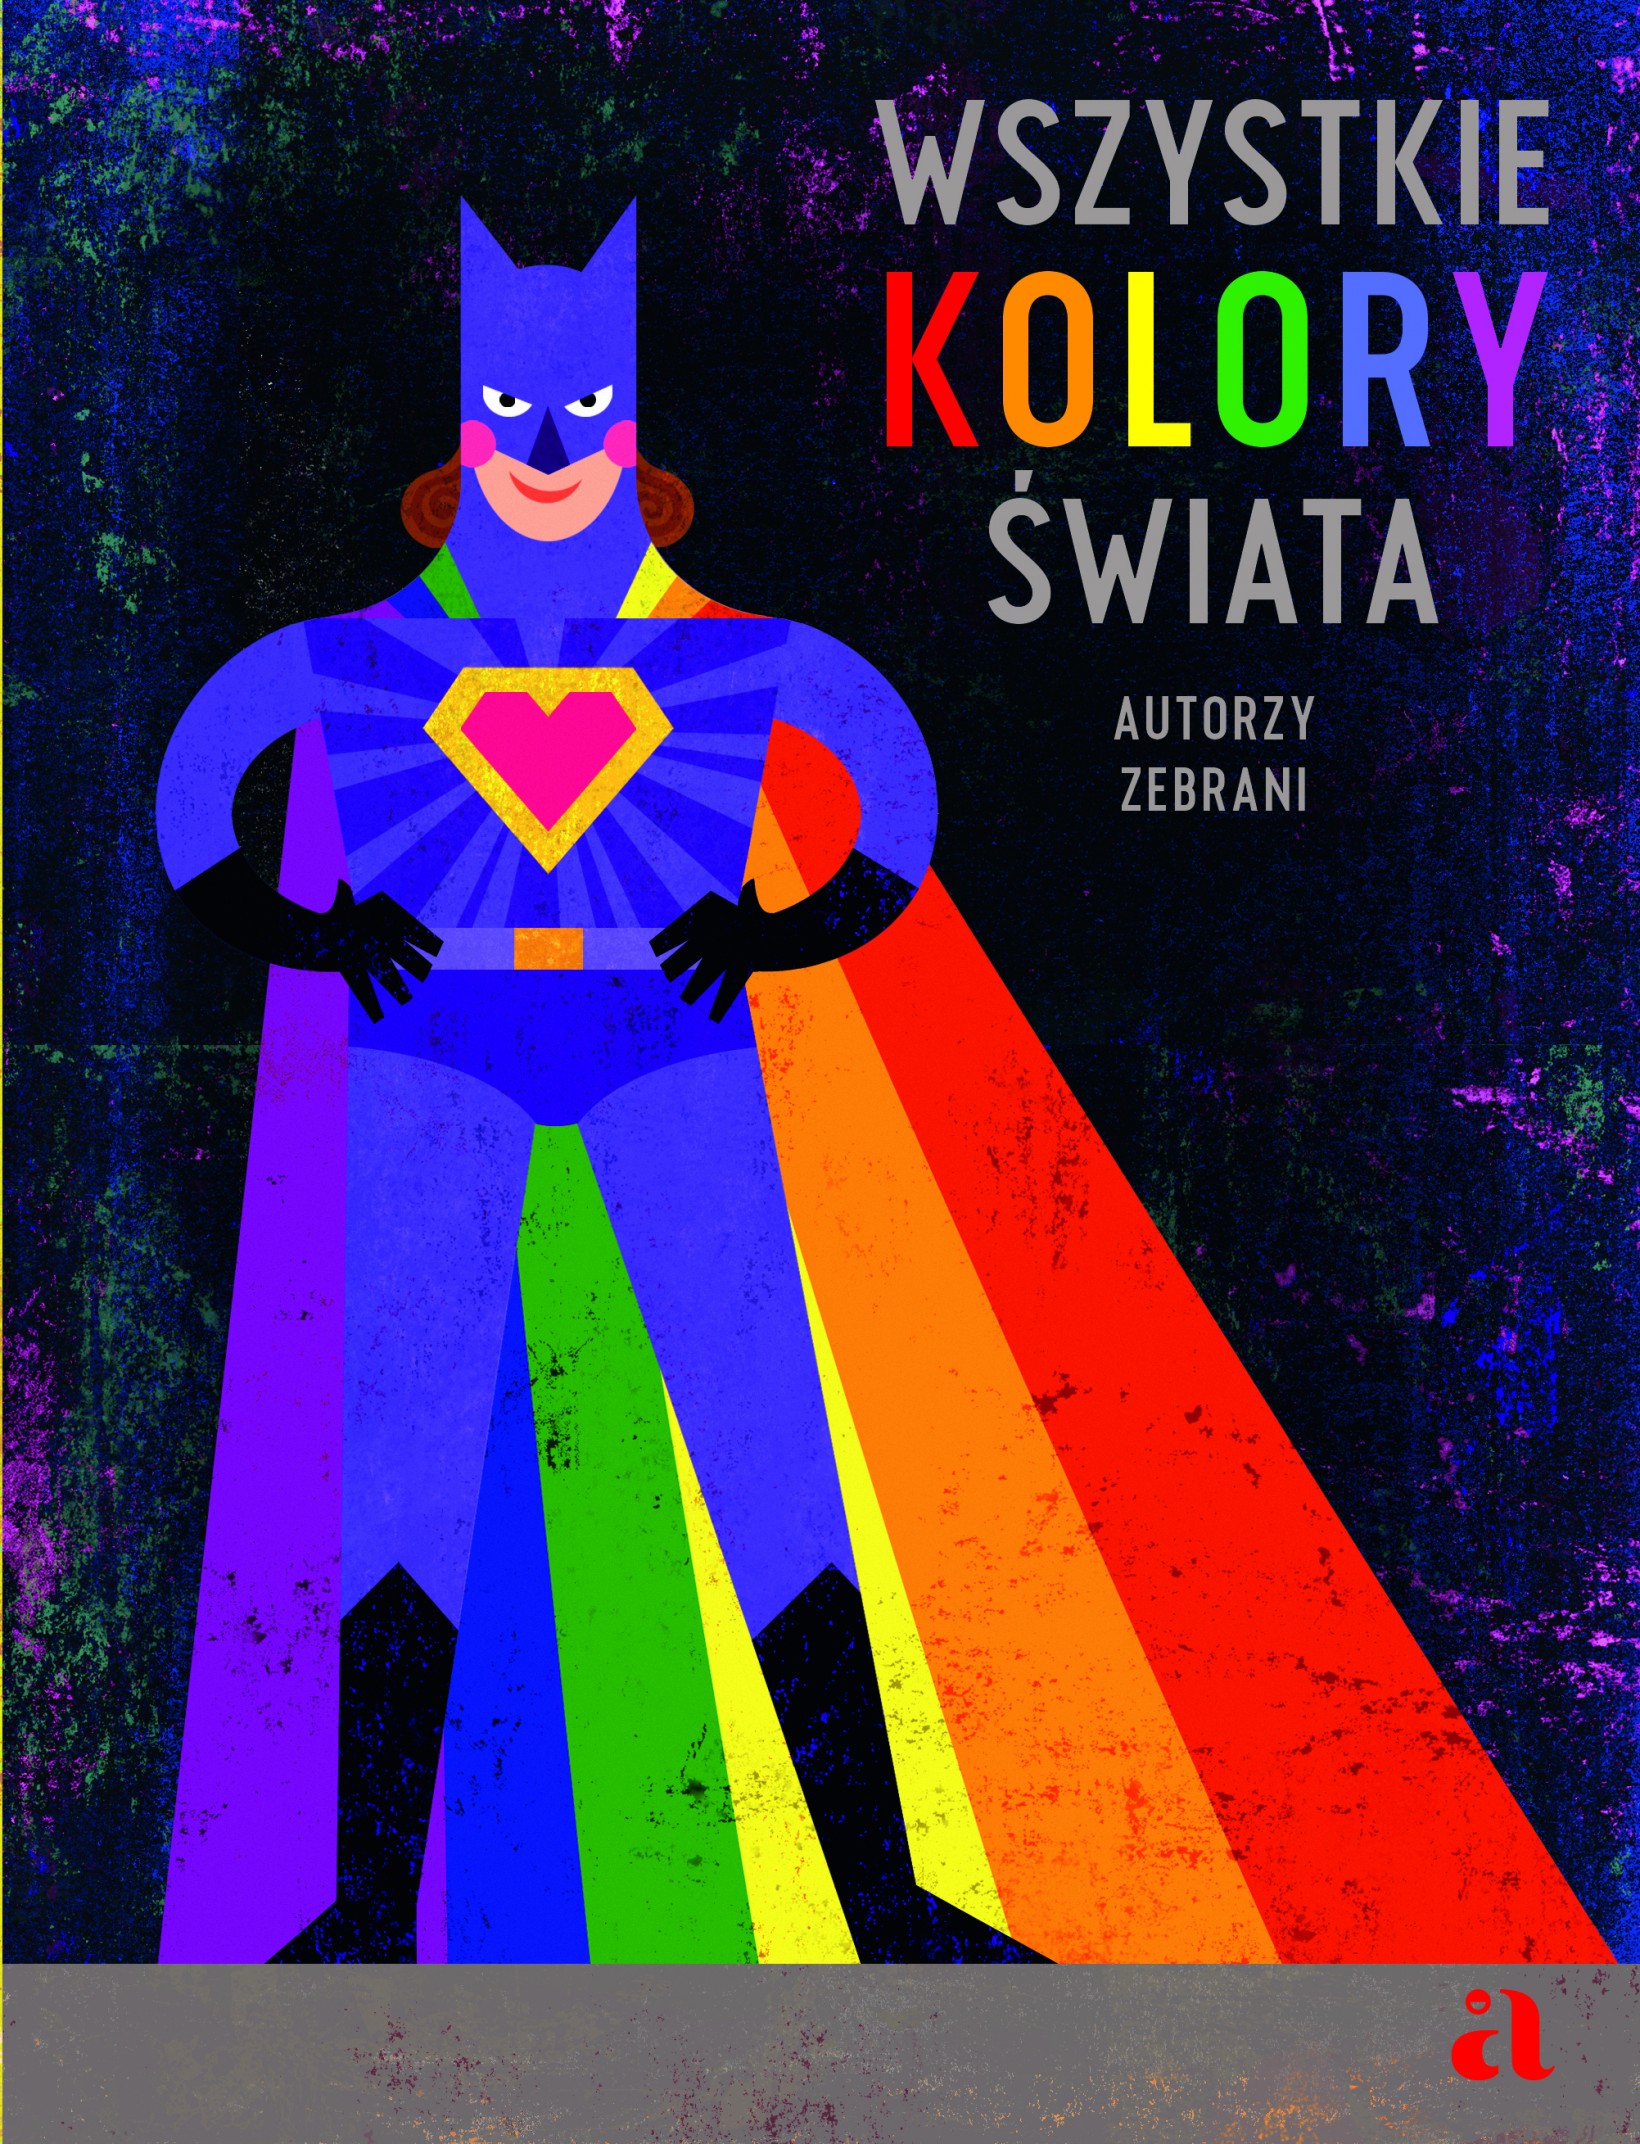 okładka książki Wszystkie kolory świata, kolorowy ilustrowany superbohater na czarnym tle 